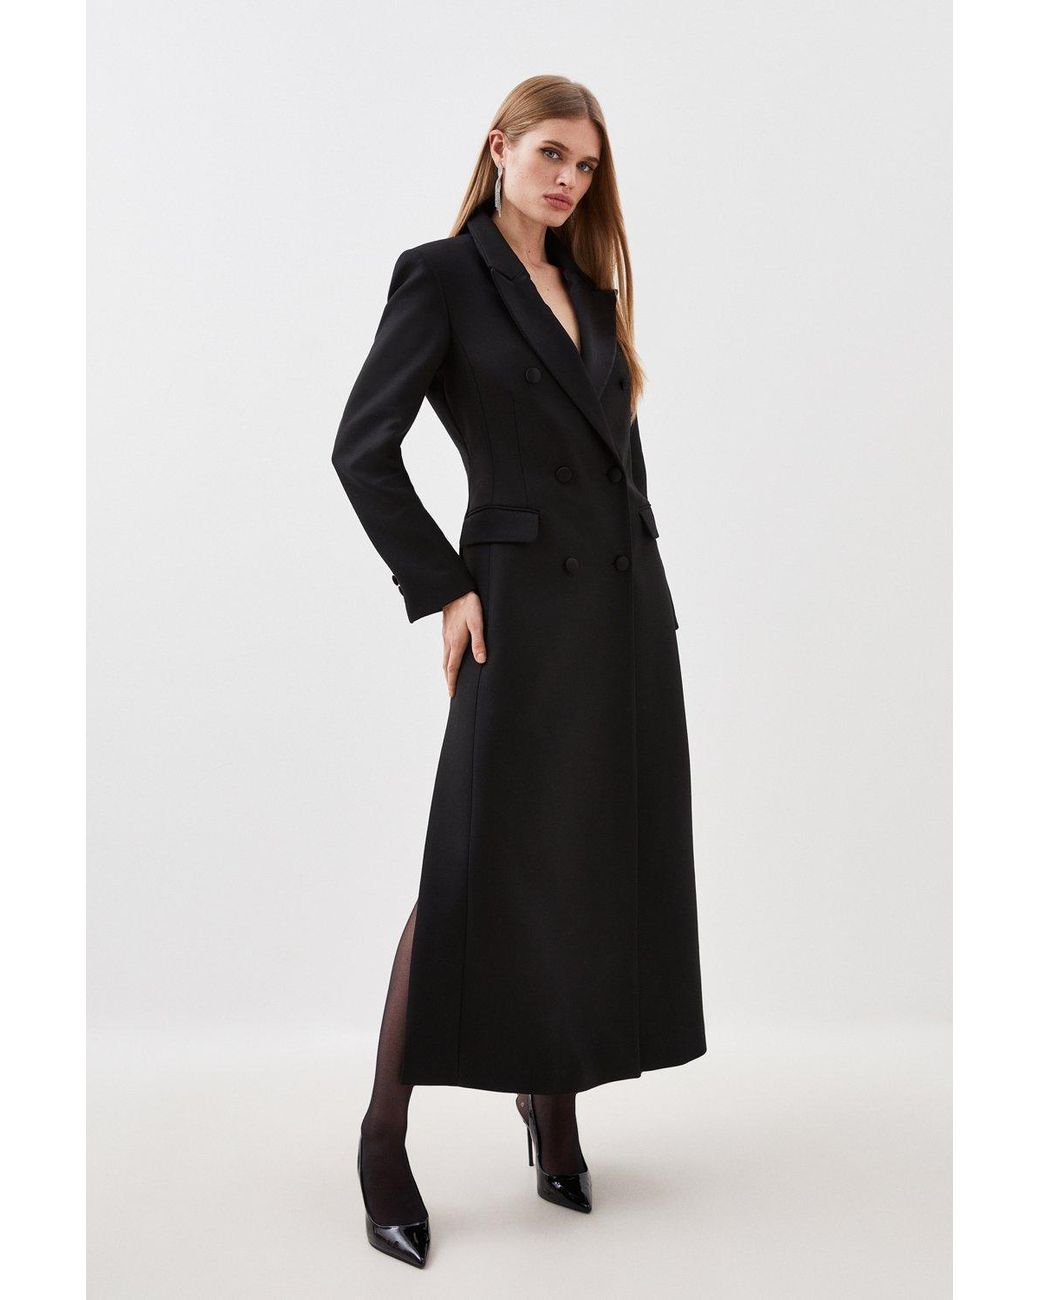 Karen Millen Contrast Satin Double Breasted Coat in Black